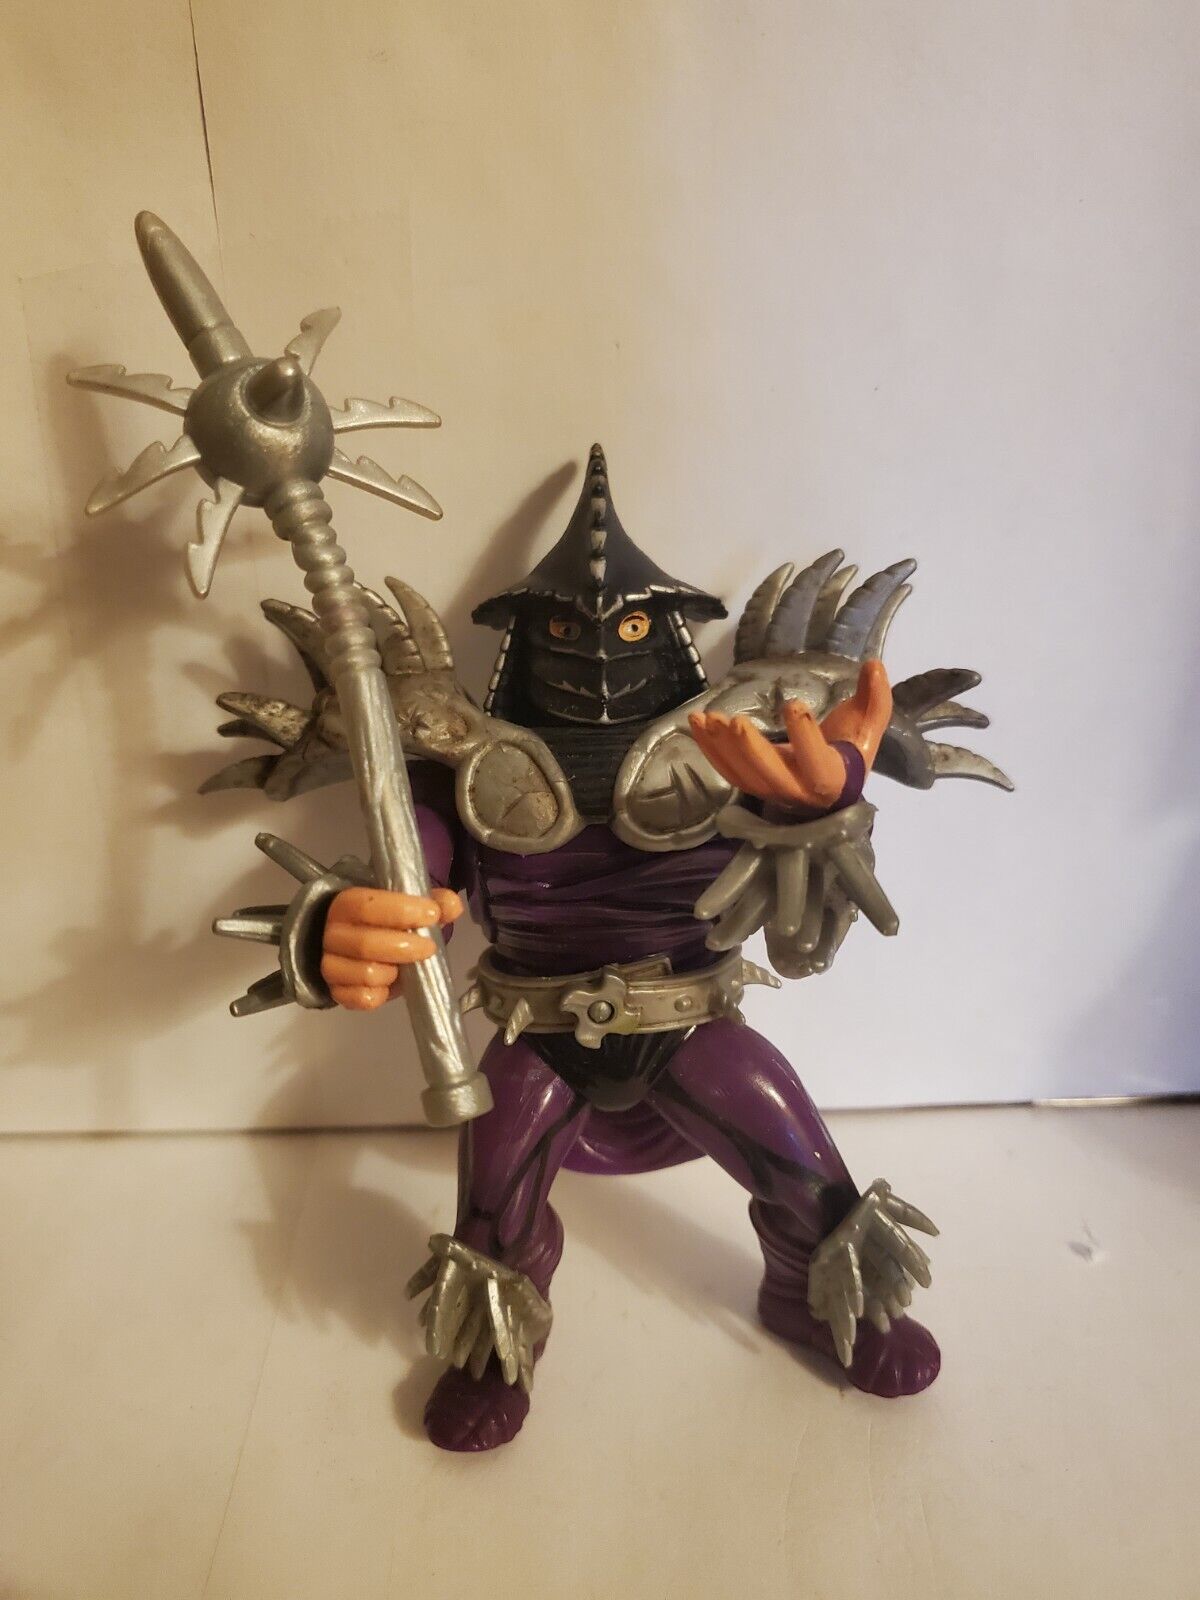 1991 TMNT Super Shredder Ninja Turtles Playmates Figure